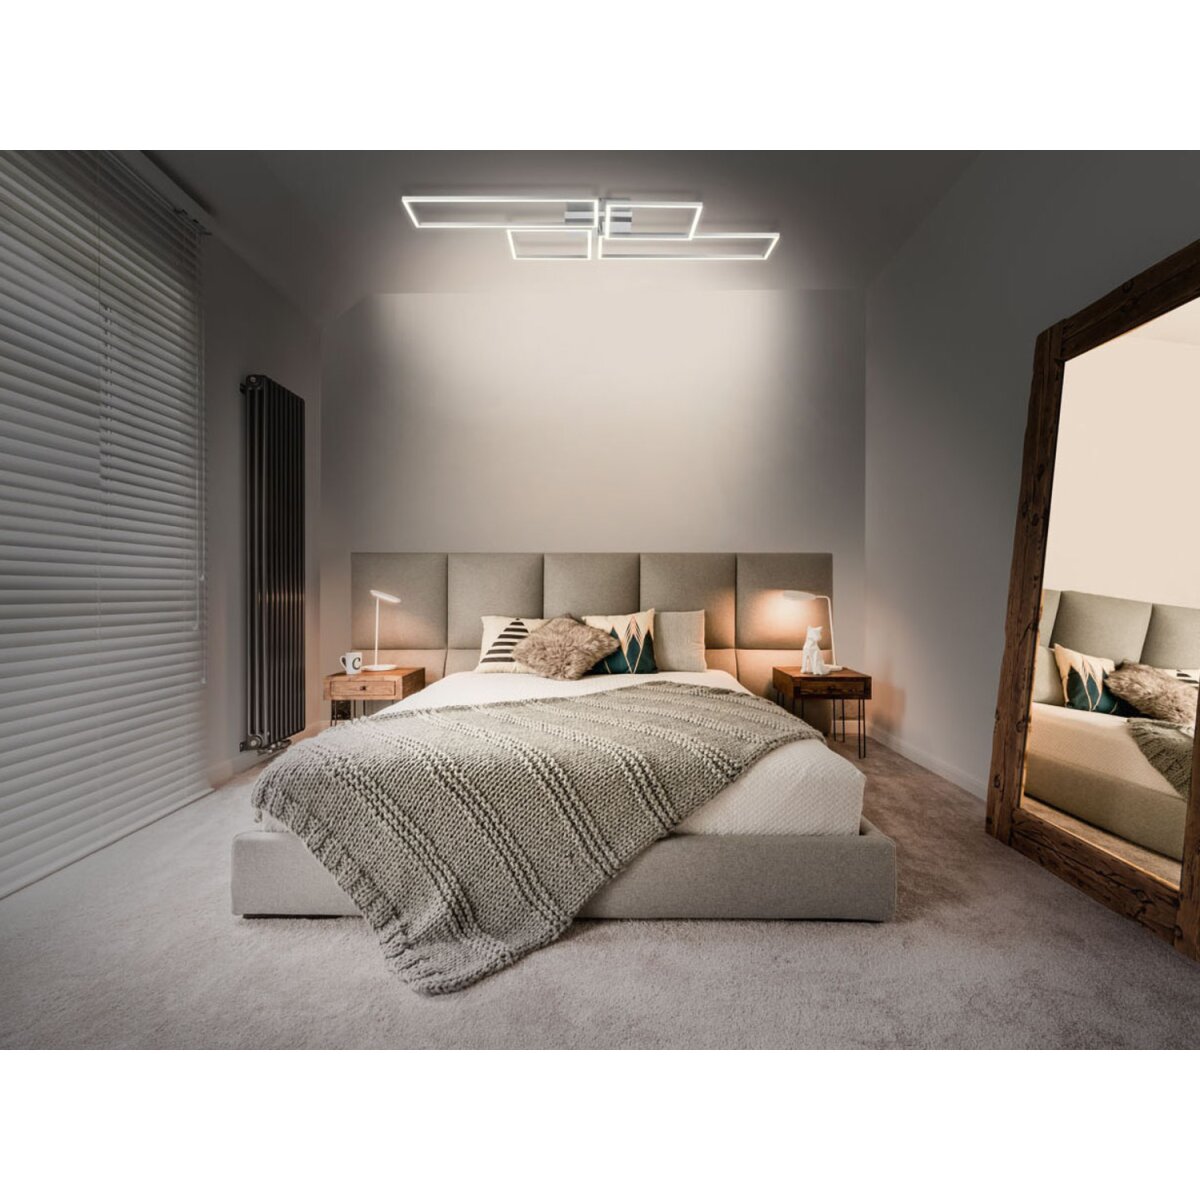 LIVARNO home Deckenleuchte, mit Lichtfarbensteuerung »Zigbee Smart Home« -  B-Ware neuwertig, 54,99 €